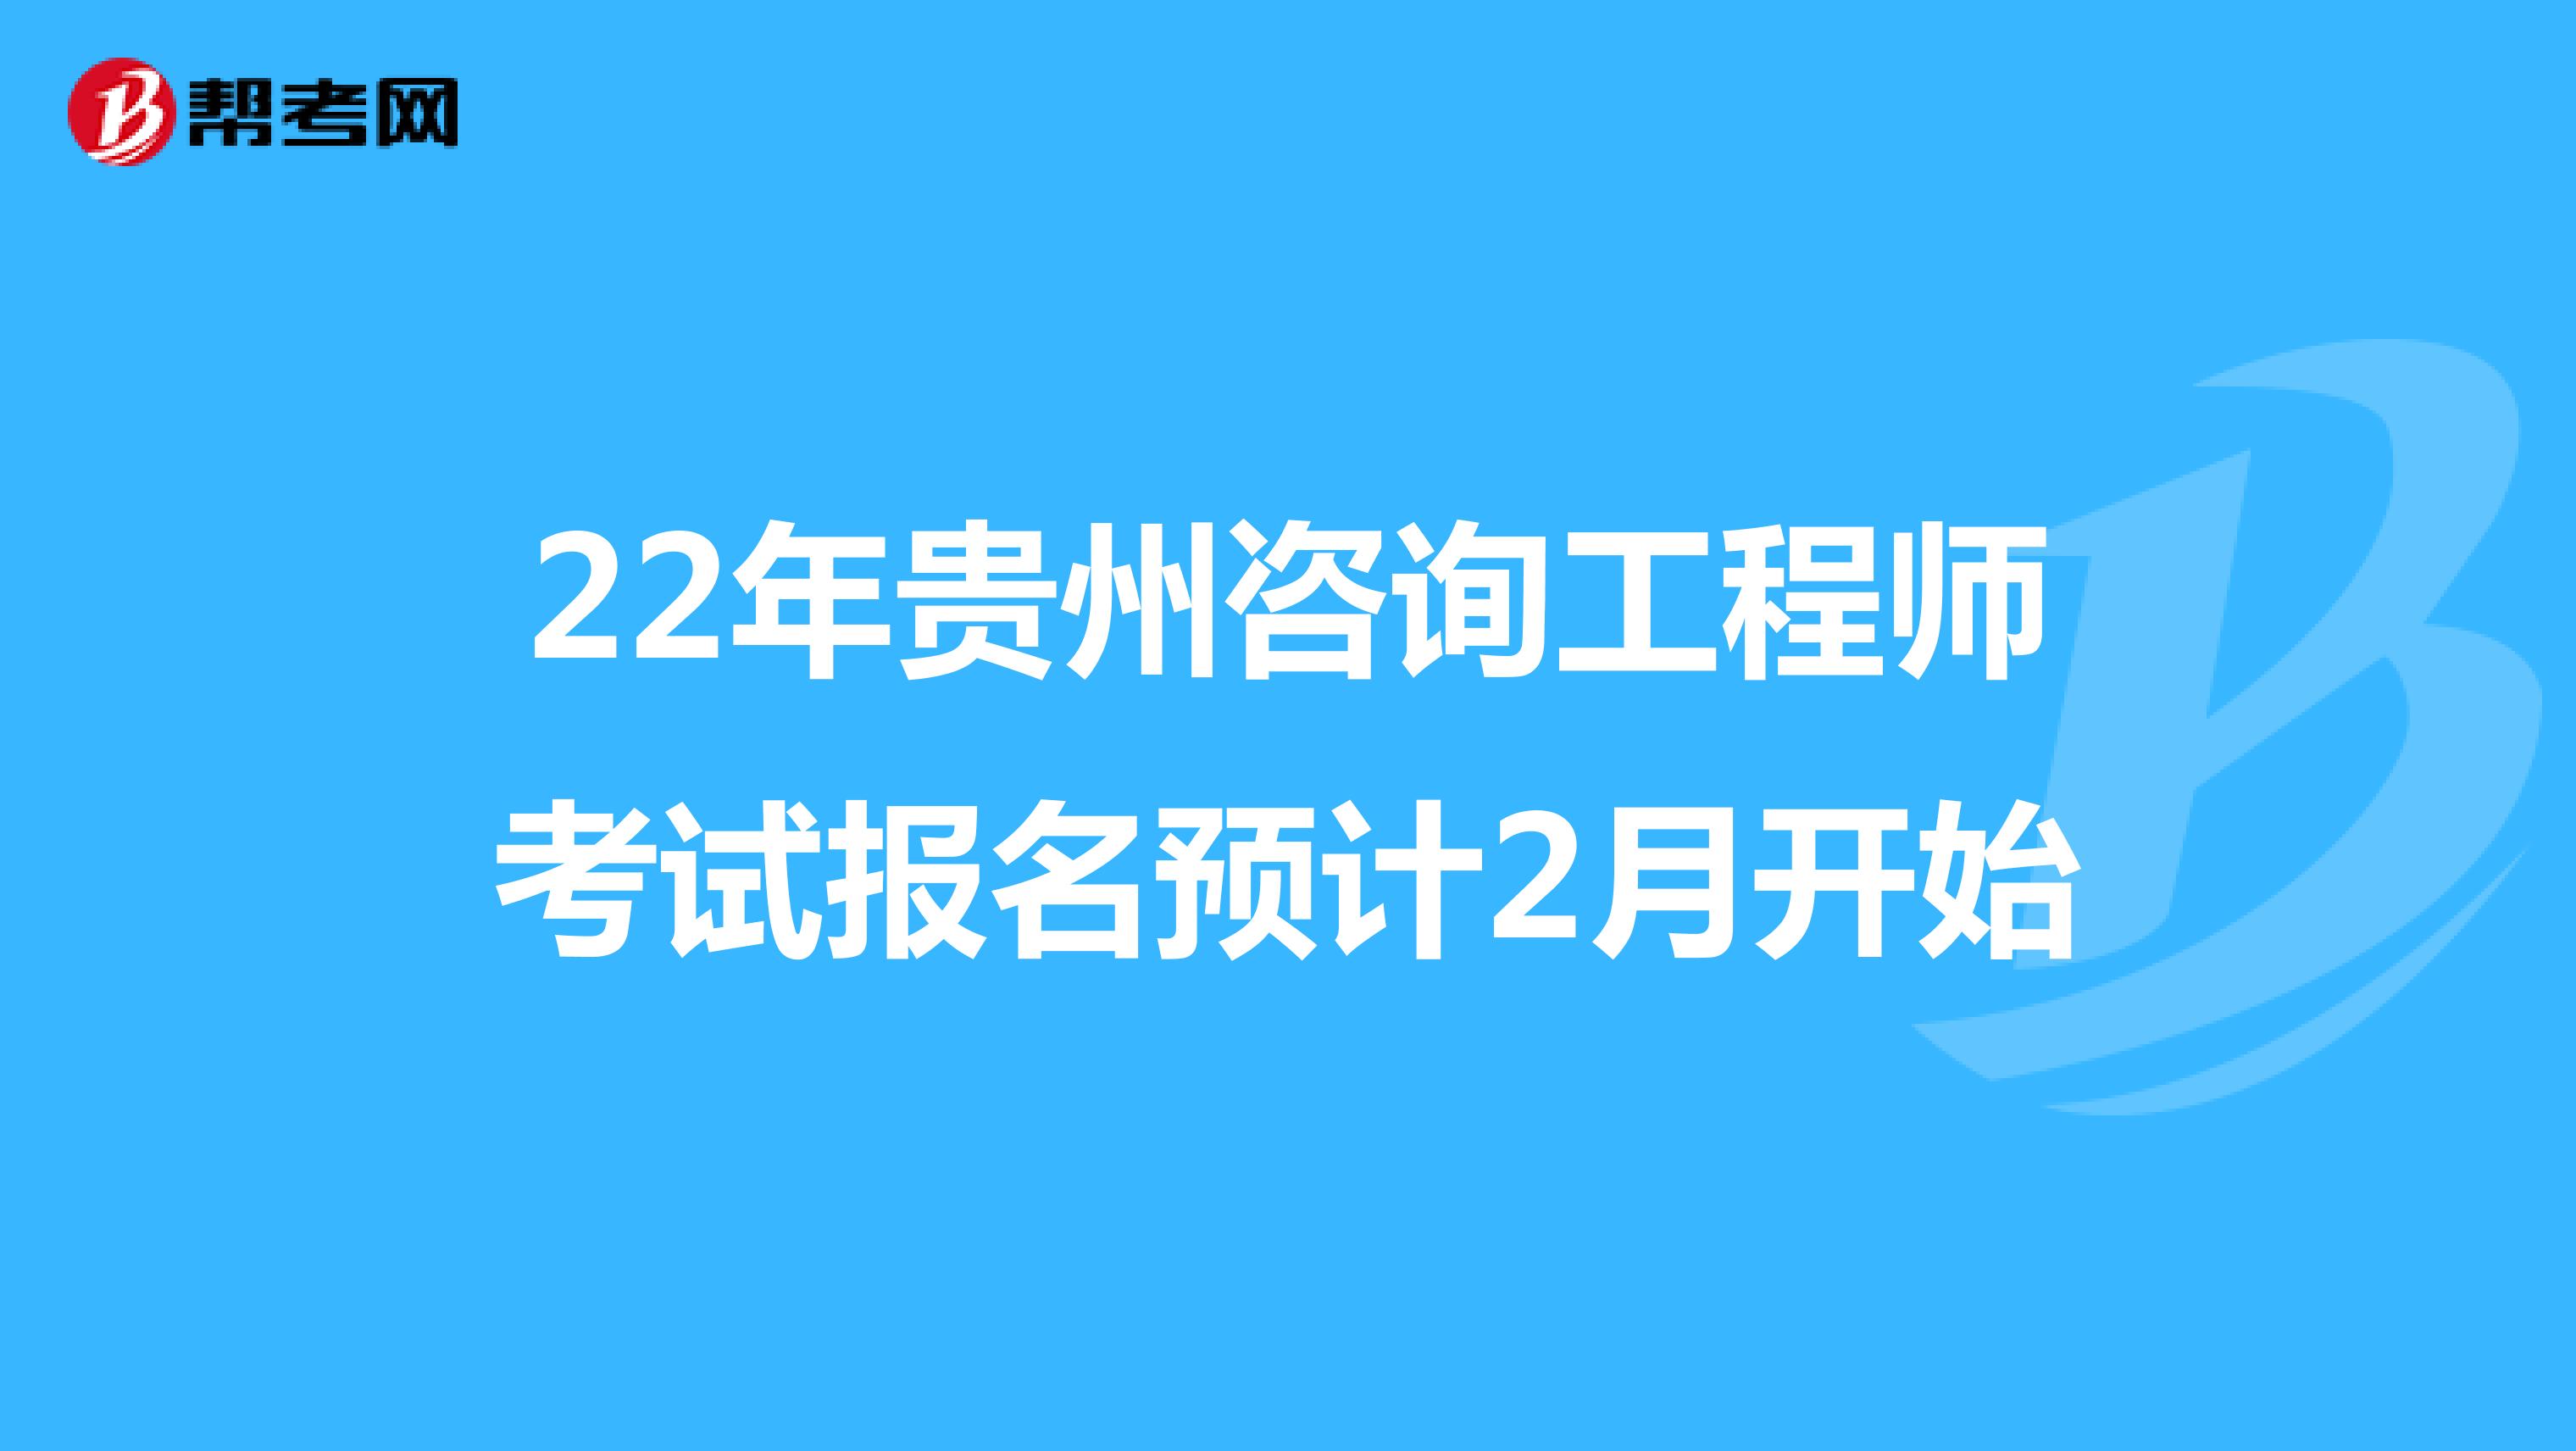 22年贵州咨询工程师考试报名预计2月开始